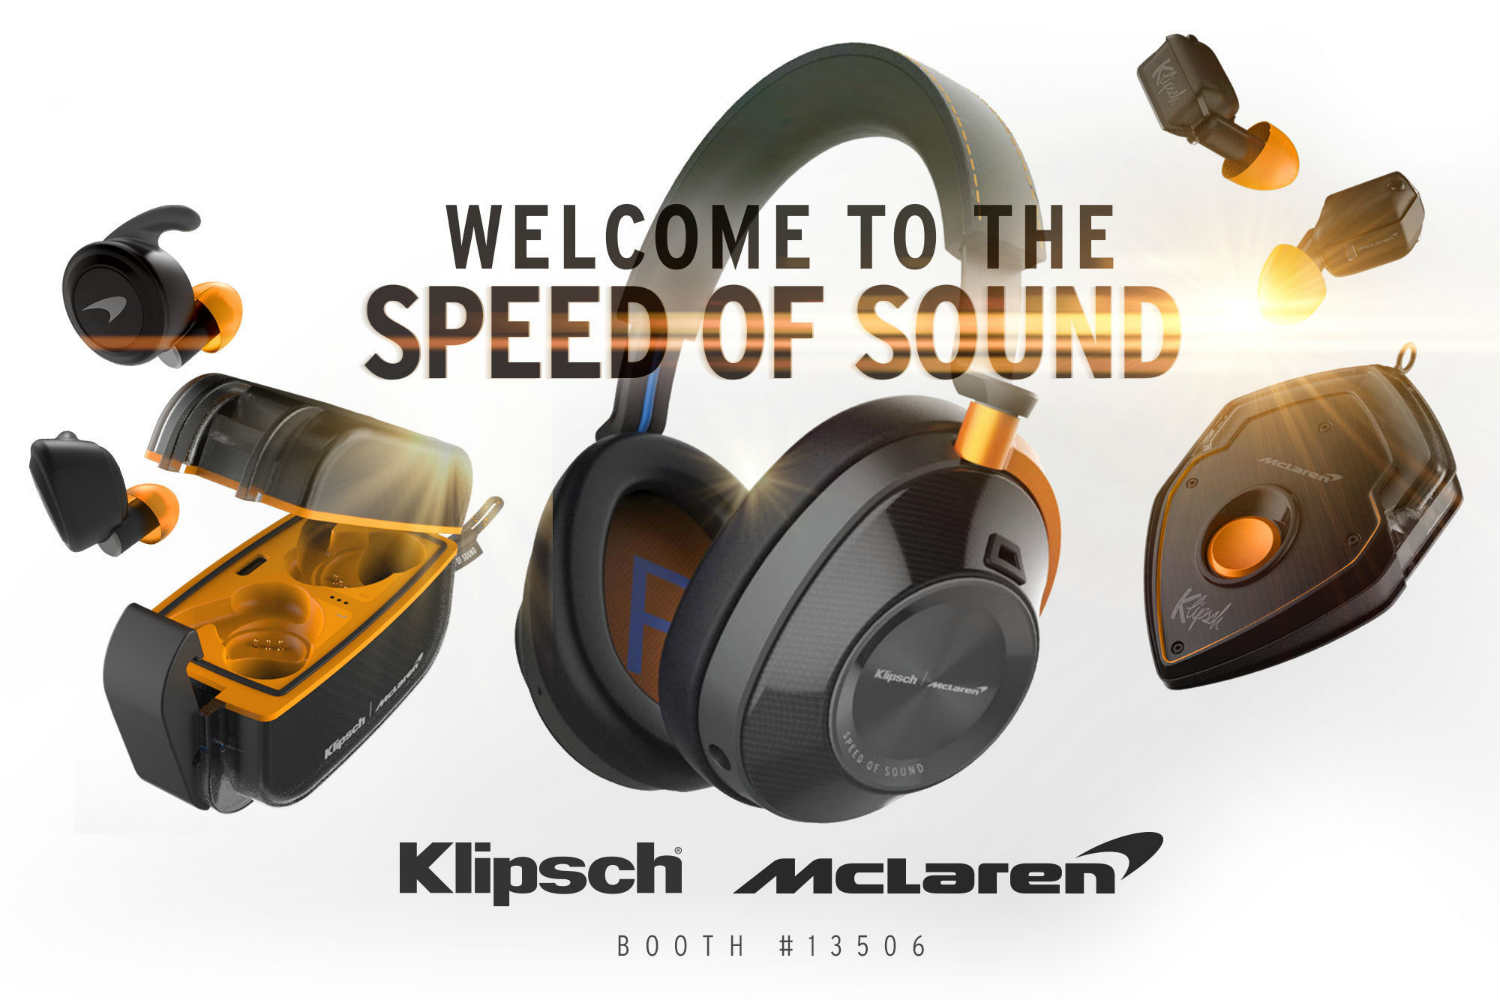 Klipsch x McLaren T10 True Wireless in-ears